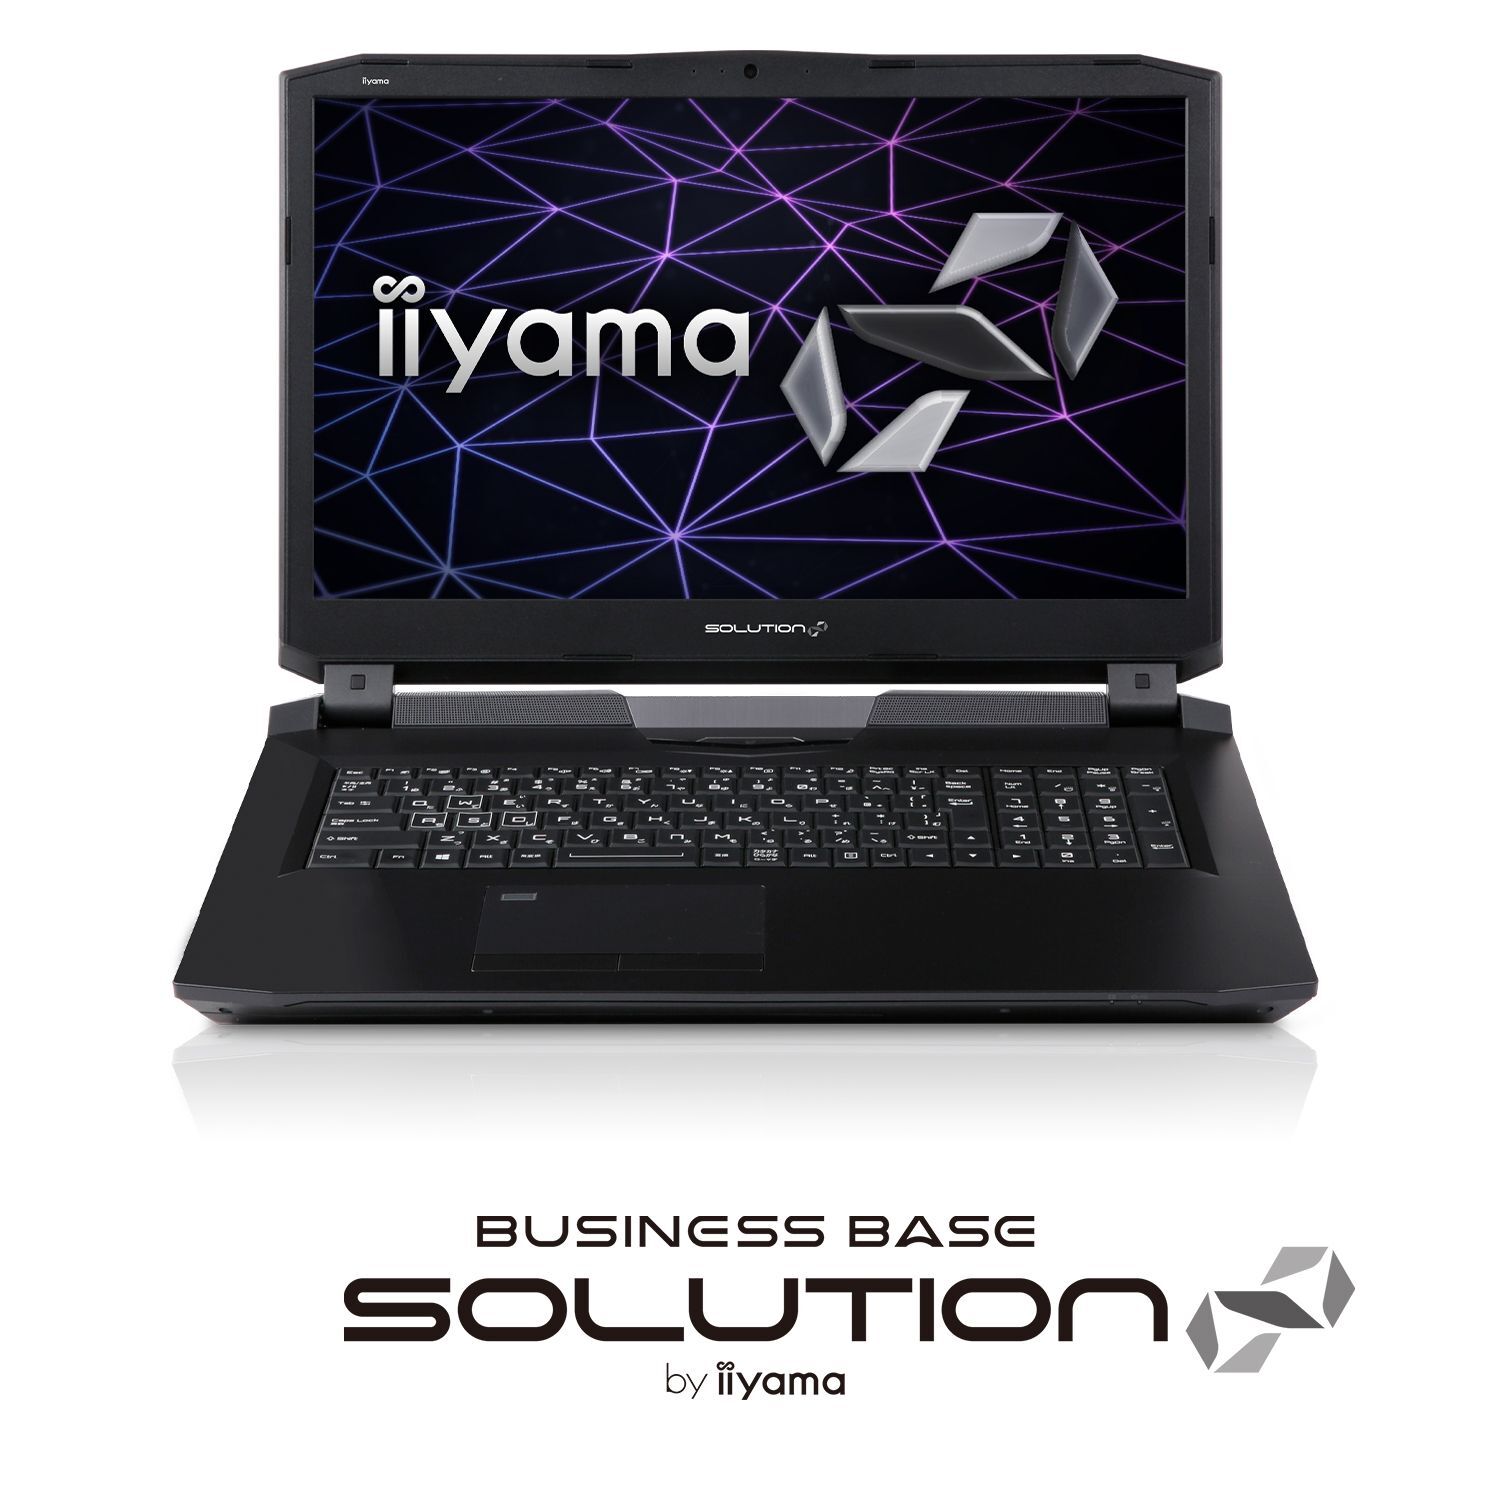 Iiyama Pc Solution ソリューション インフィニティ よりnvidia R Geforce R Gtx 1080を搭載したnvidia G Sync Tm 対応17型ビジネス向けノートパソコンを発売 株式会社ユニットコムのプレスリリース